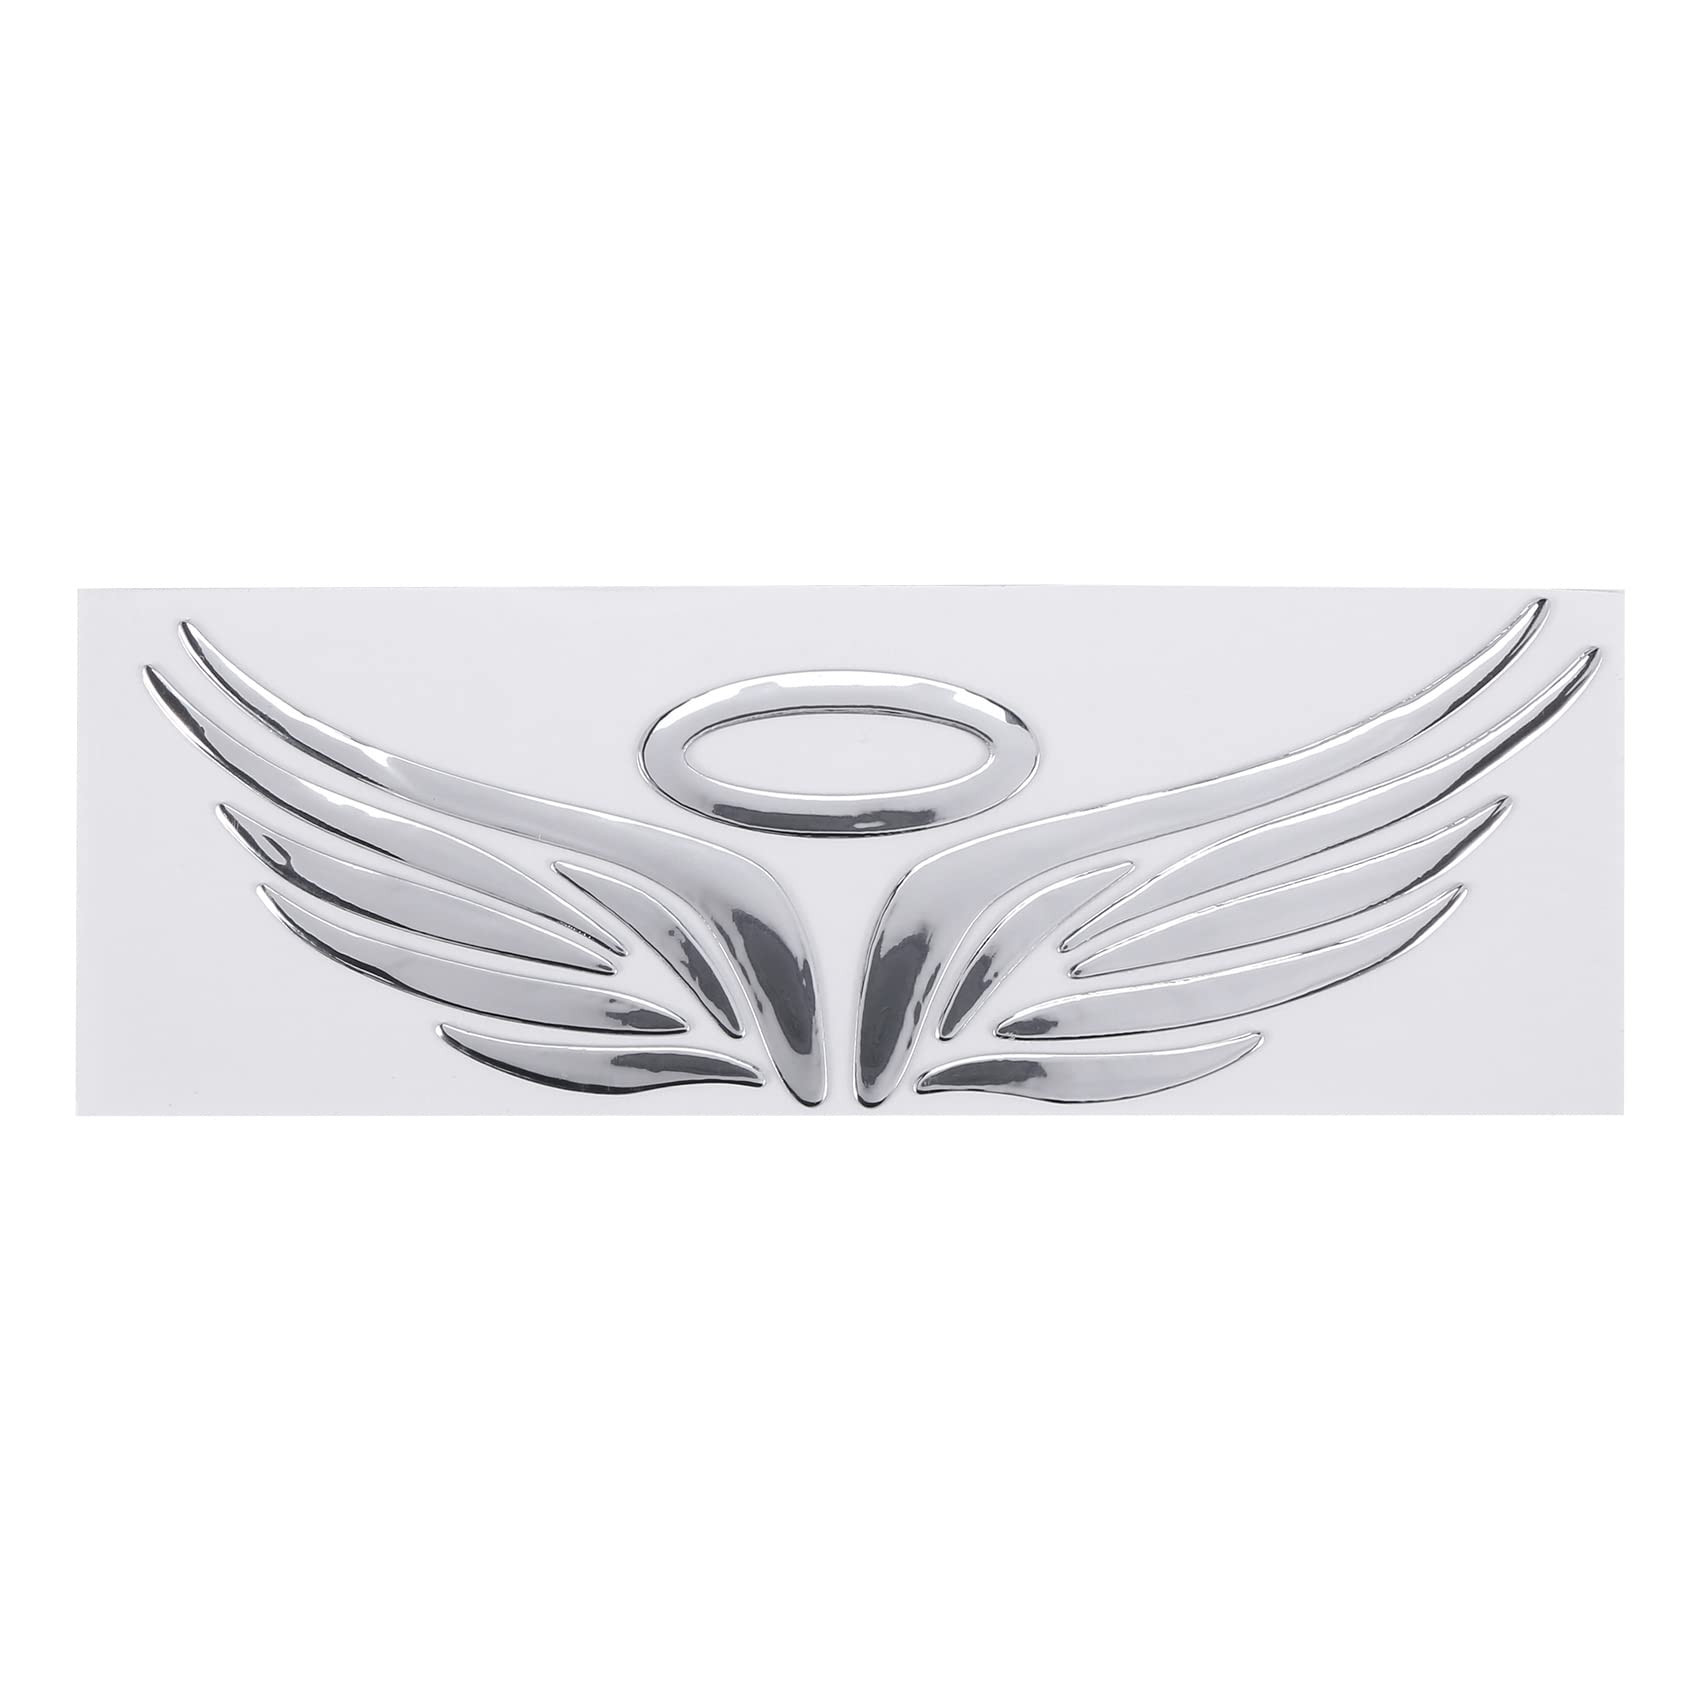 3D Chrom Engels-Fluegel Aufkleber Abziehbild Wagen Emblem Abziehbild Dekoration Farbe Silber von Dehumi